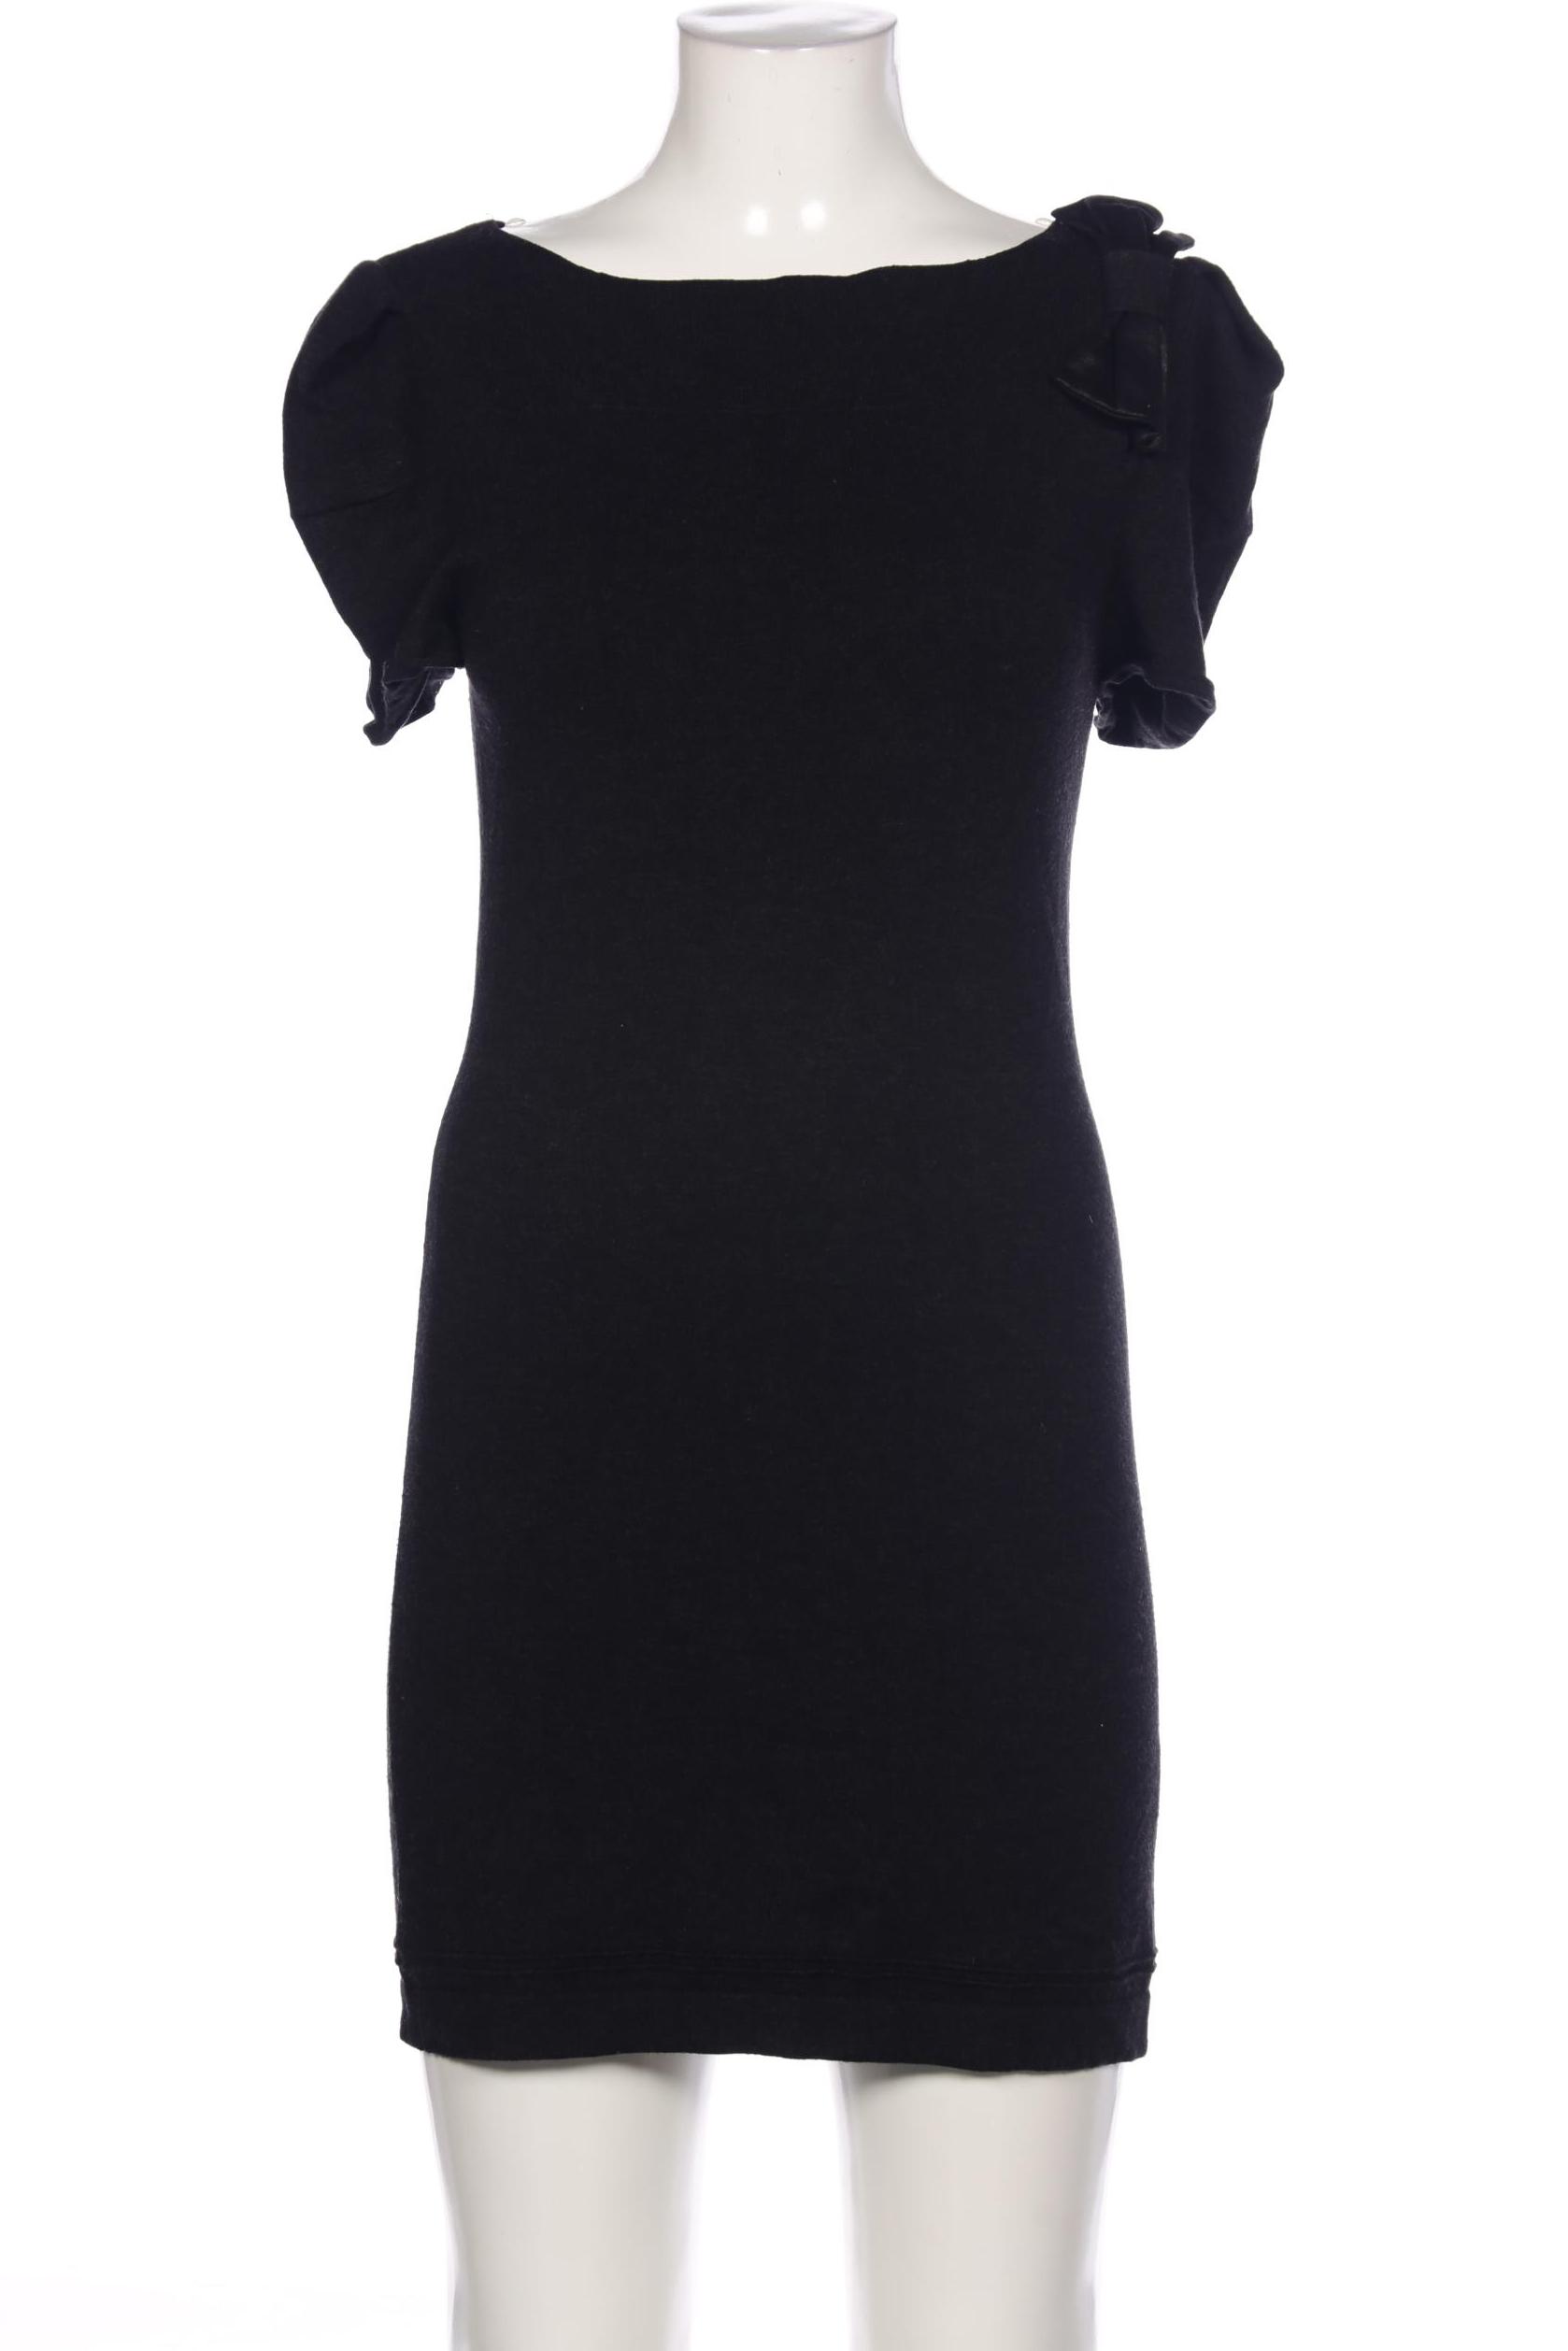 Luisa Cerano Damen Kleid, schwarz, Gr. 38 von LUISA CERANO